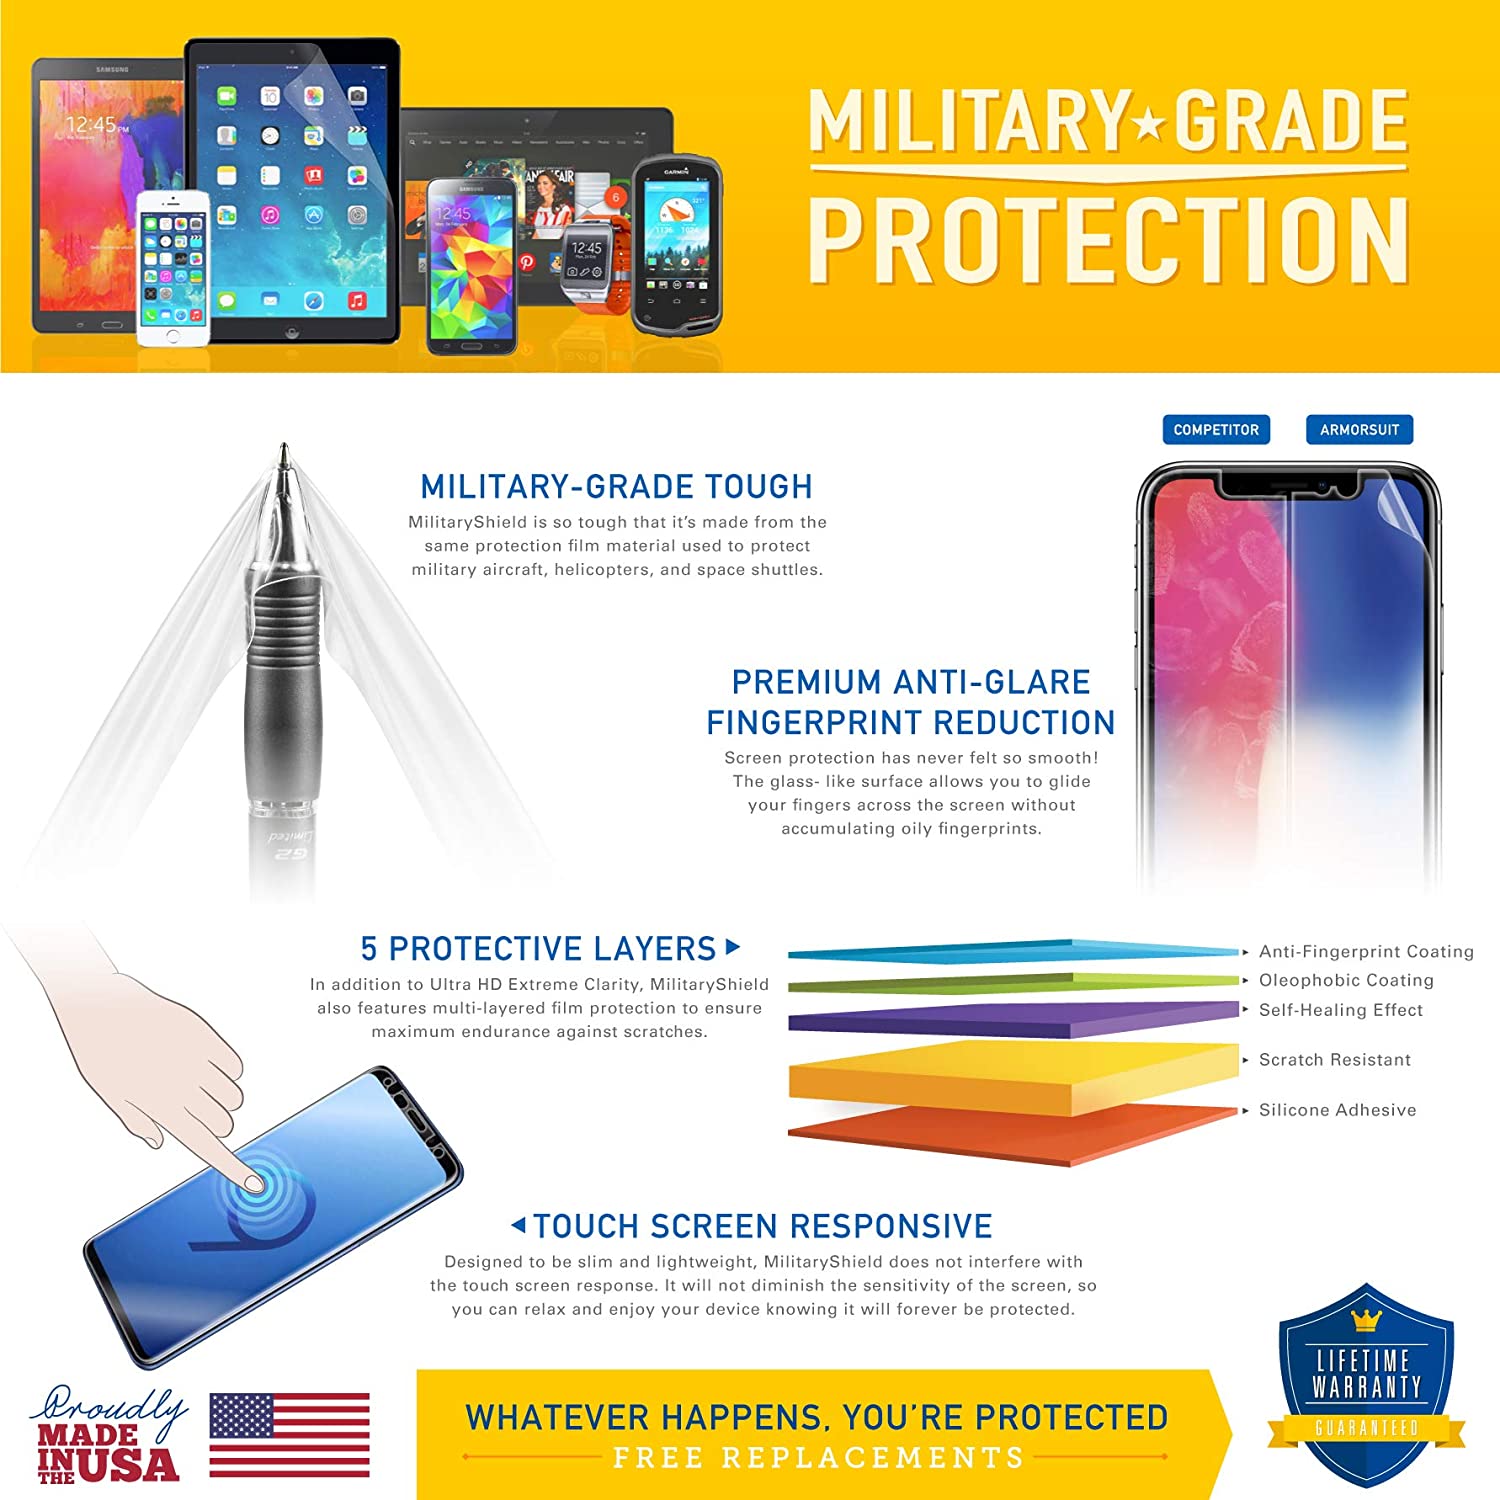 Samsung Galaxy Tab 2 10.1 Screen Protector